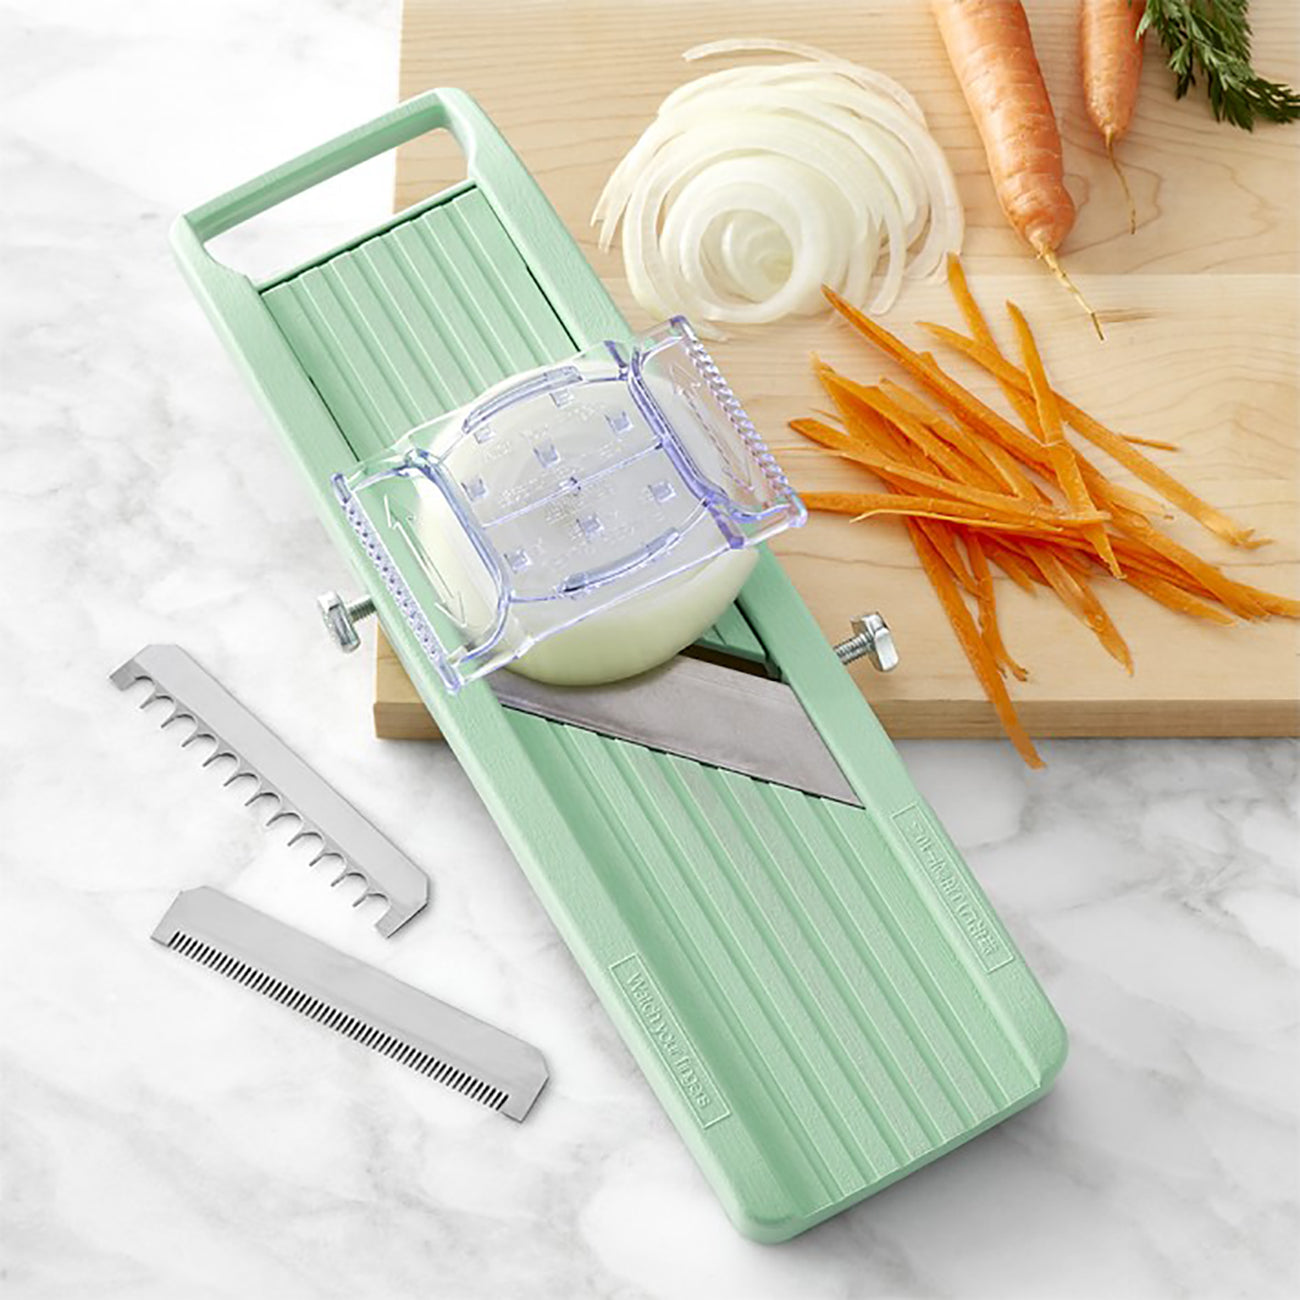 Benriner Turning Vegetable Slicer 